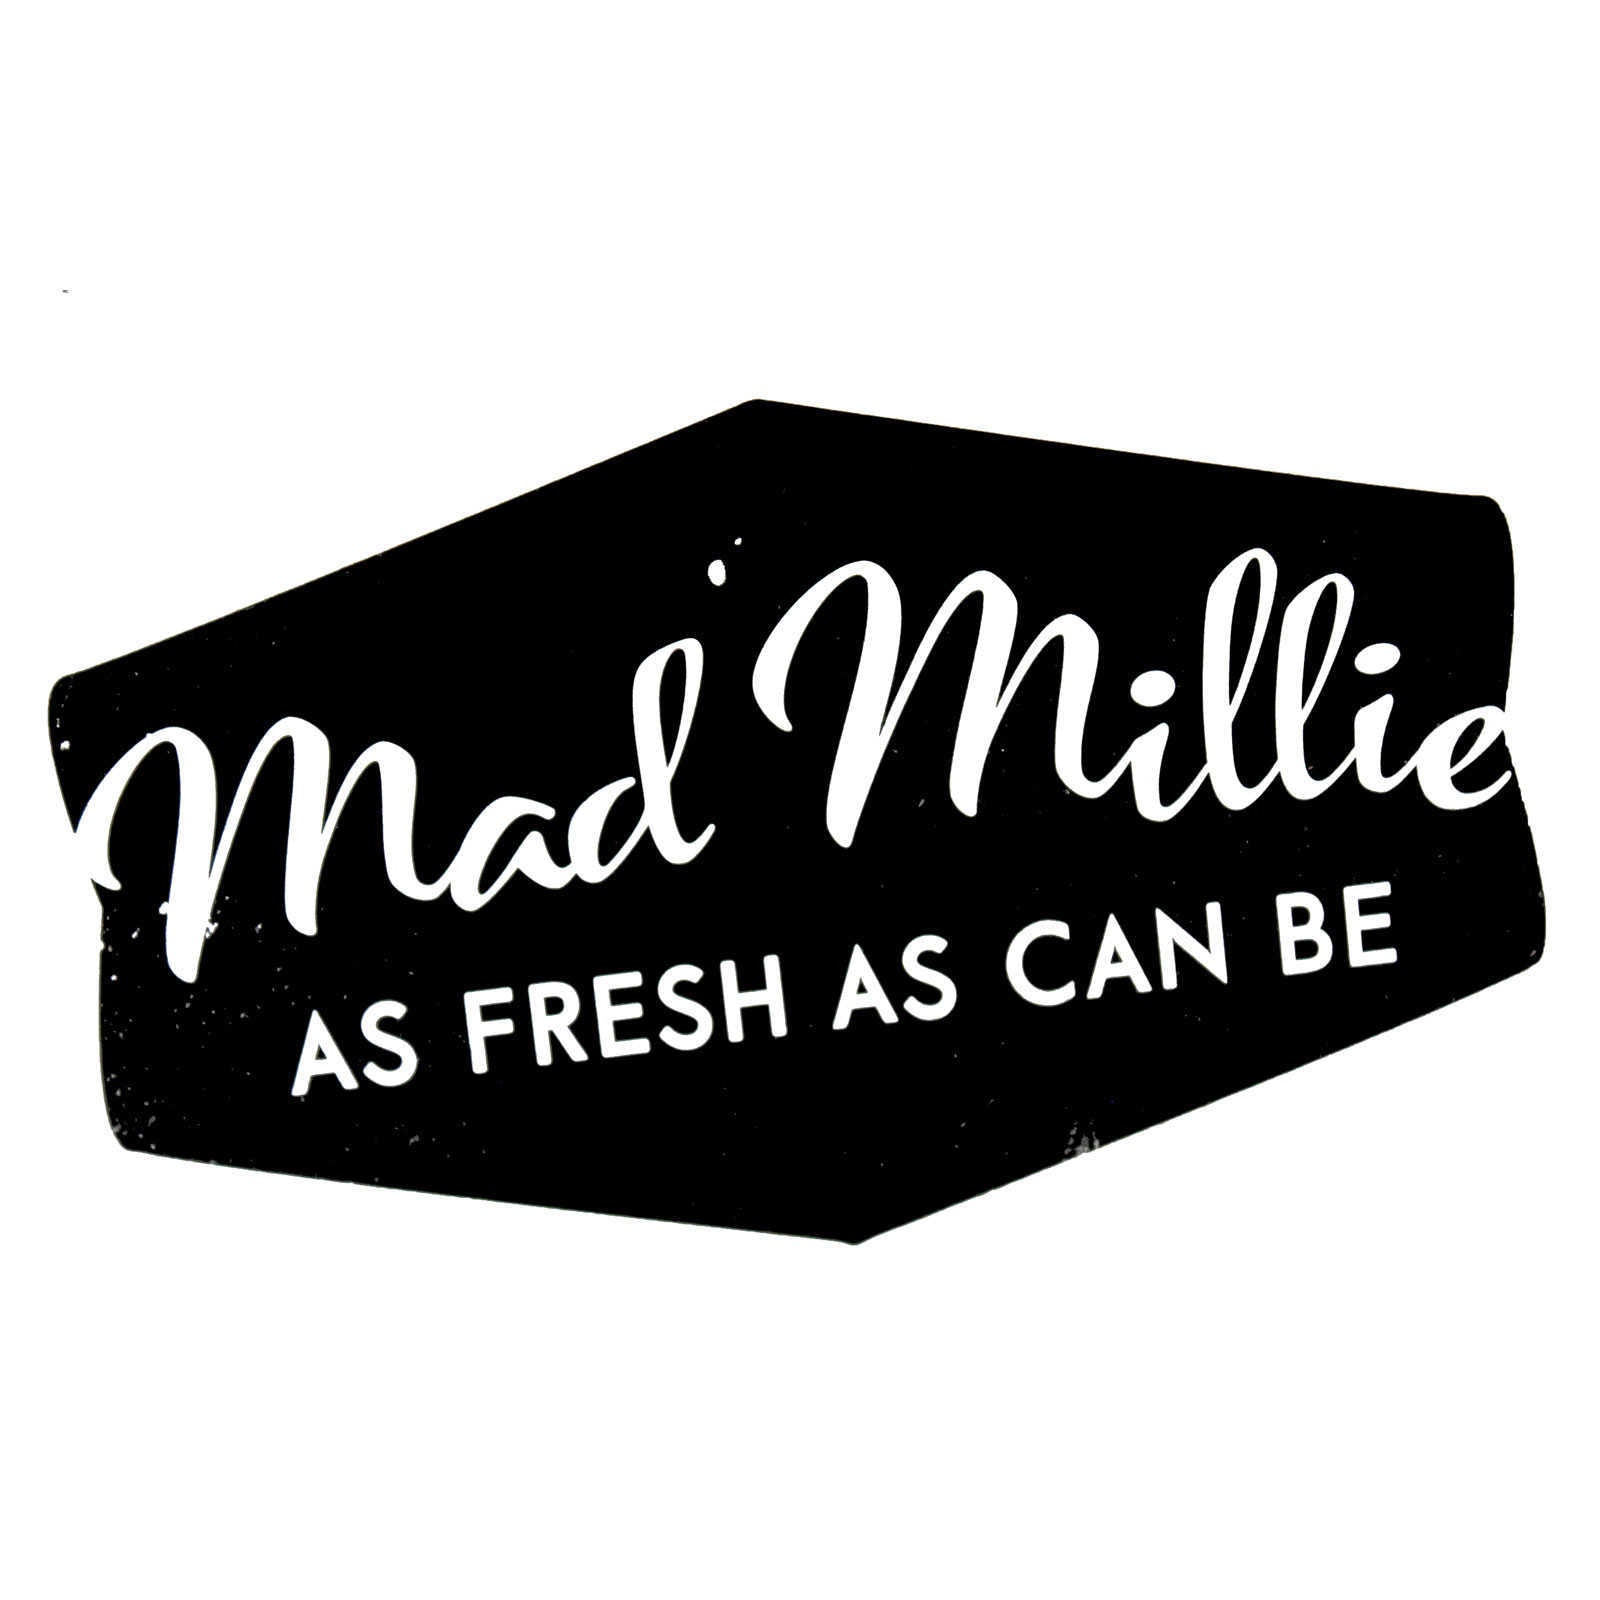 Mad Millie